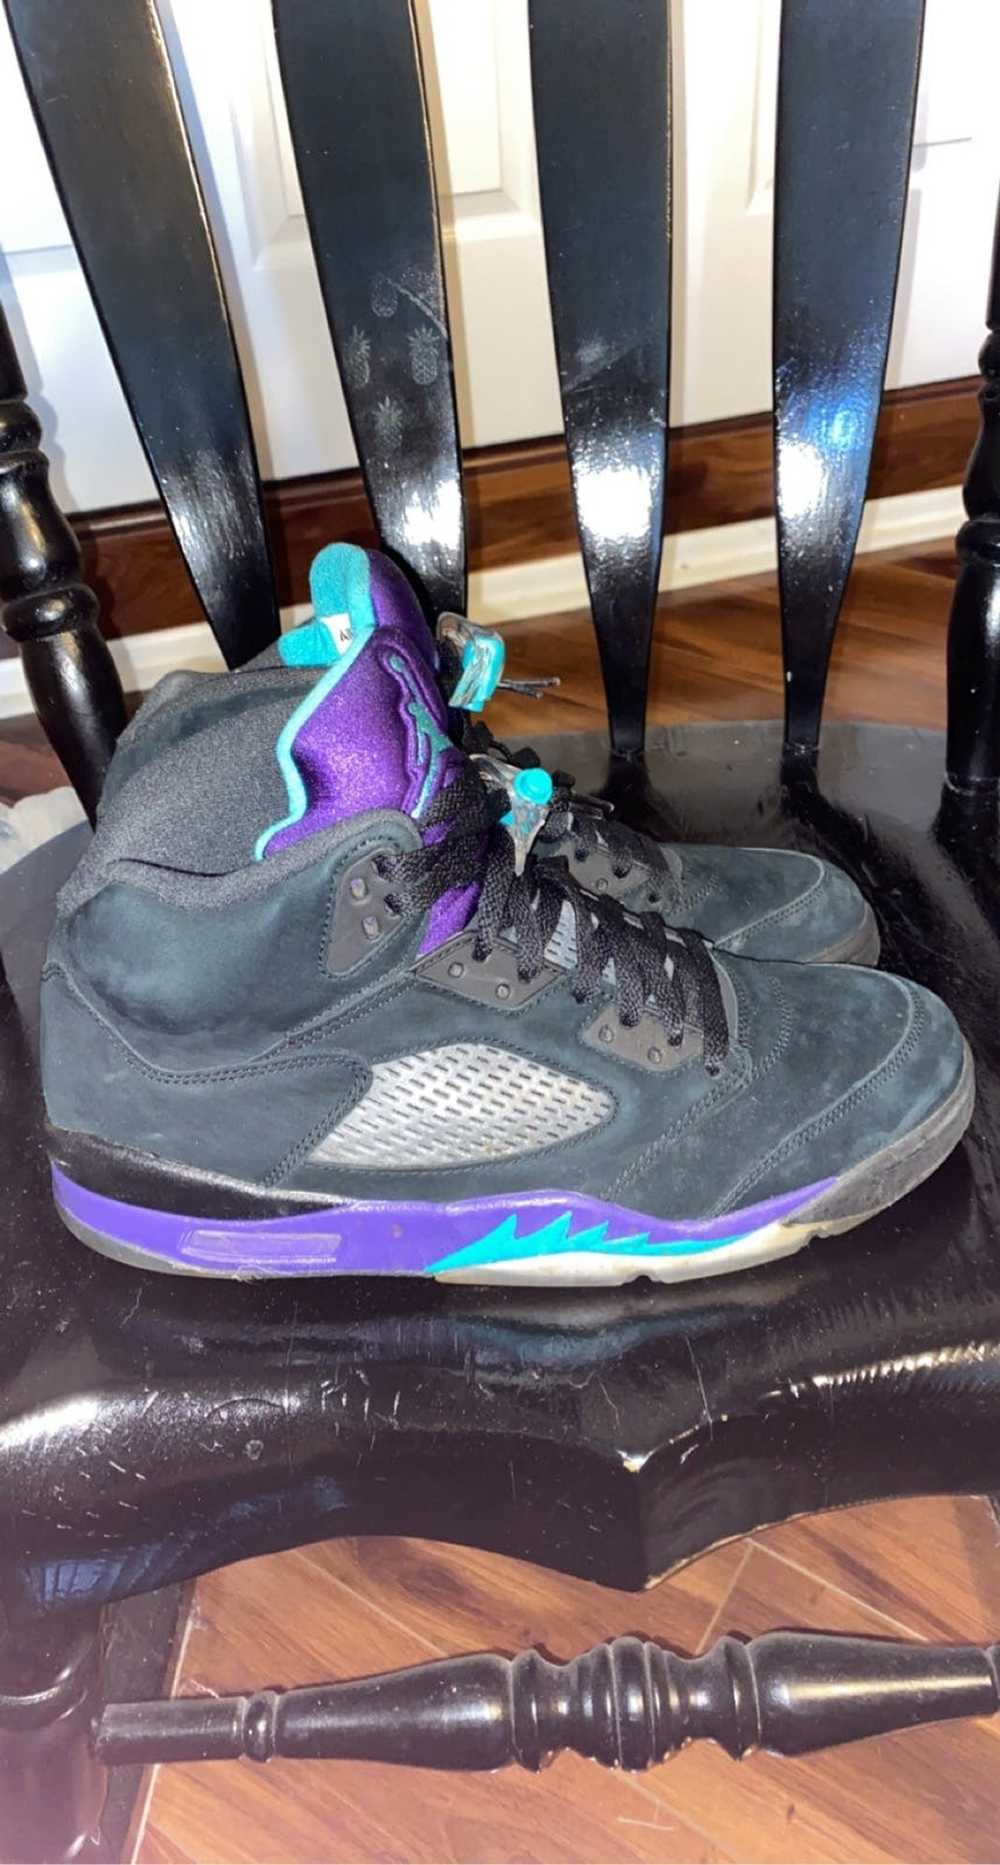 Jordan Brand × Nike Jordan 5 Black Grape - image 1